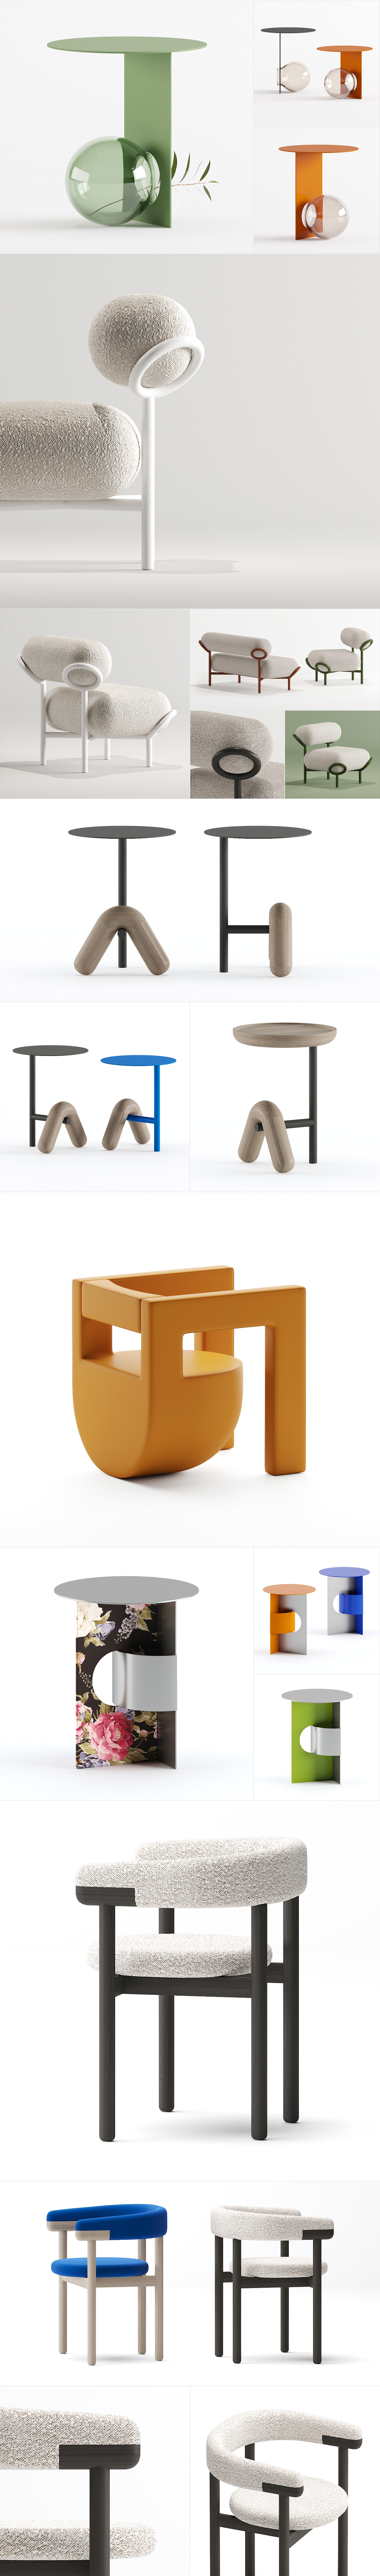 design furniture product design  interior design  architecture concept artwork